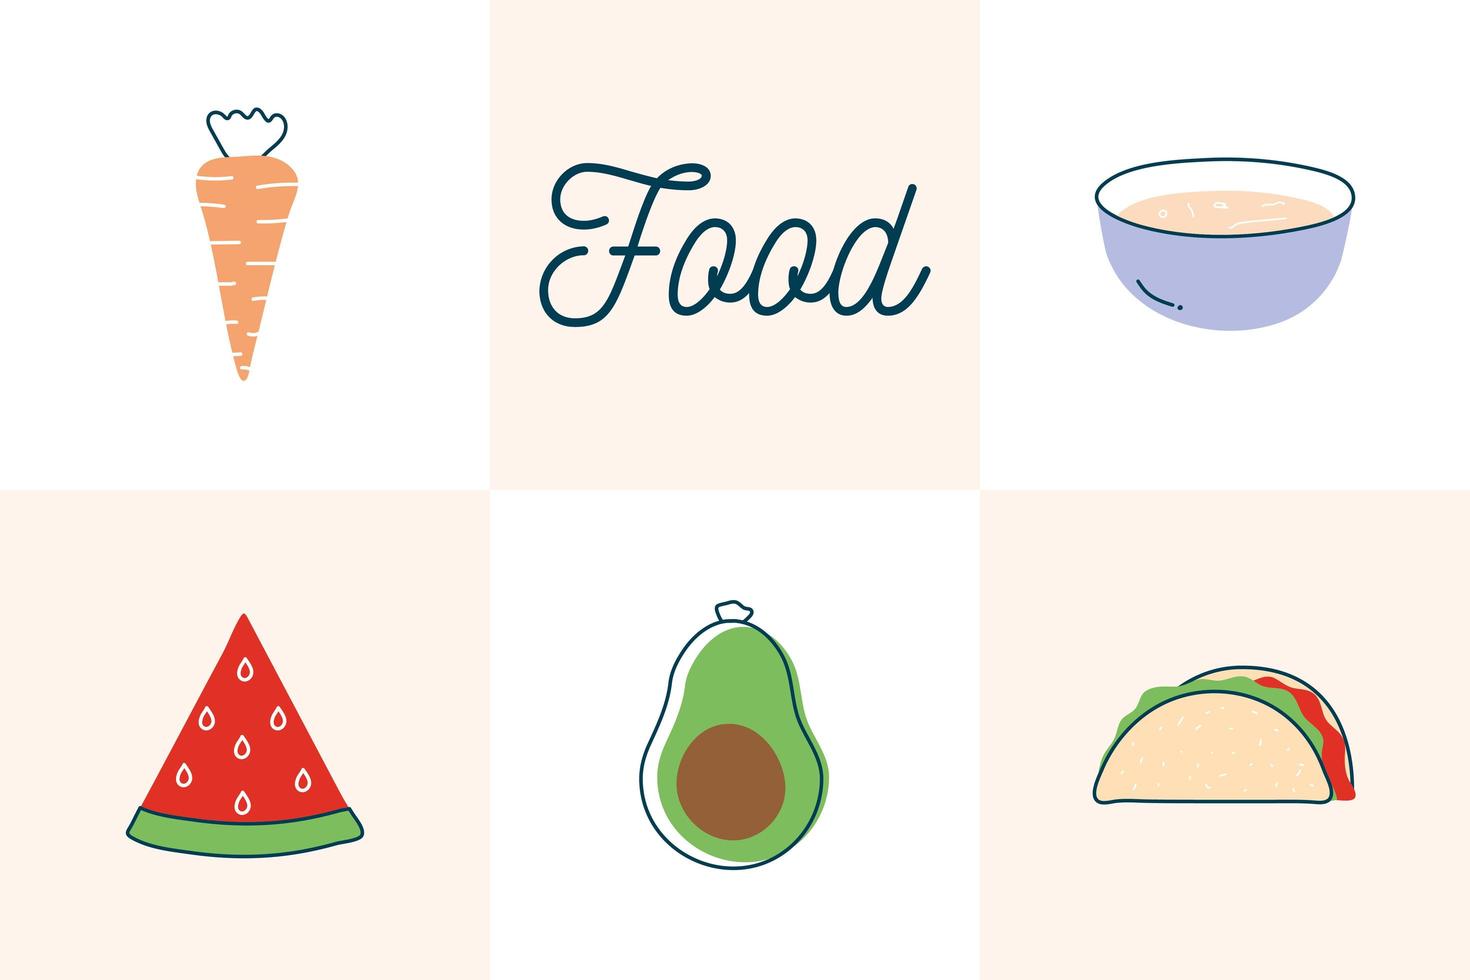 voedsel vlakke stijl pictogram decorontwerp vector